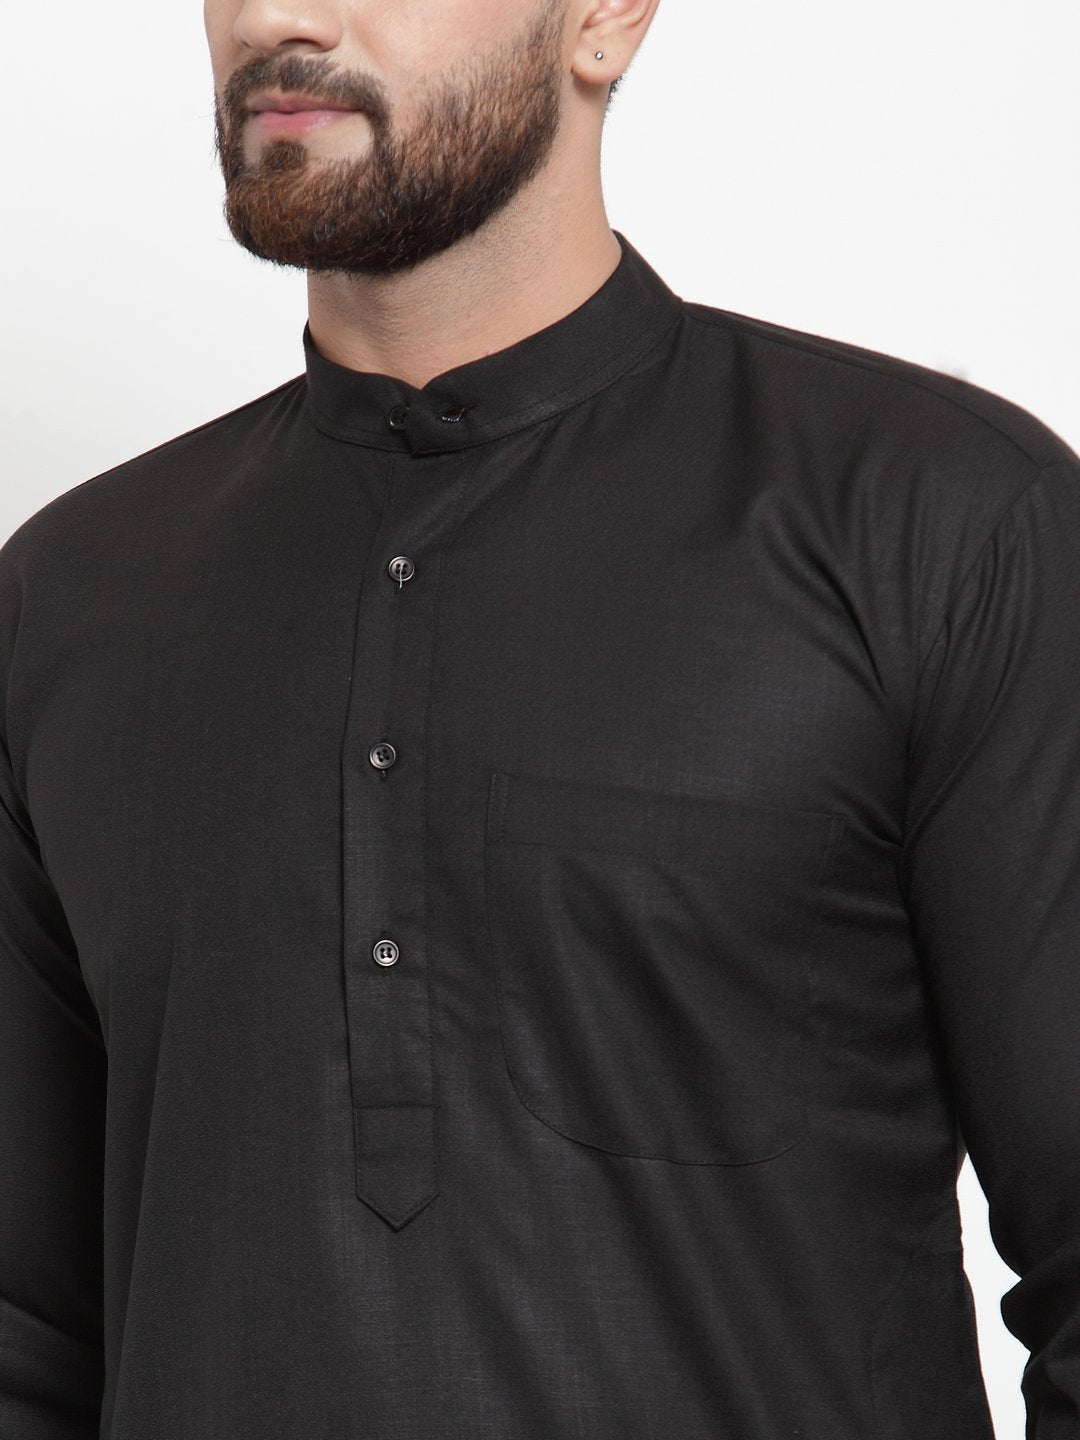 Men's Black Solid Kurta with Churidar ( JOKP 592 Black ) - Virat Fashions